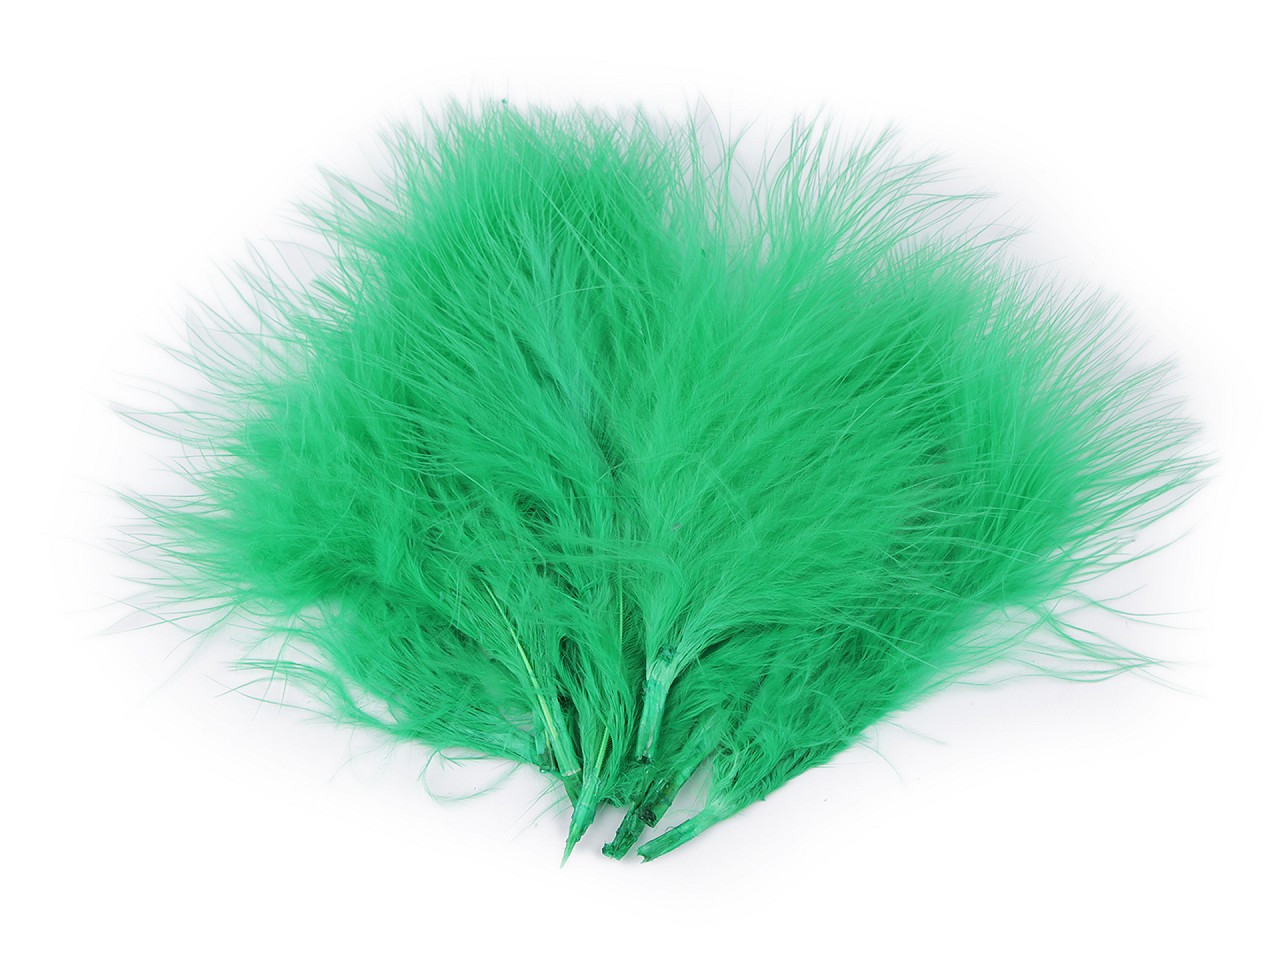 Peří marabu délka 5-12 cm, barva 4 zelená pastelová